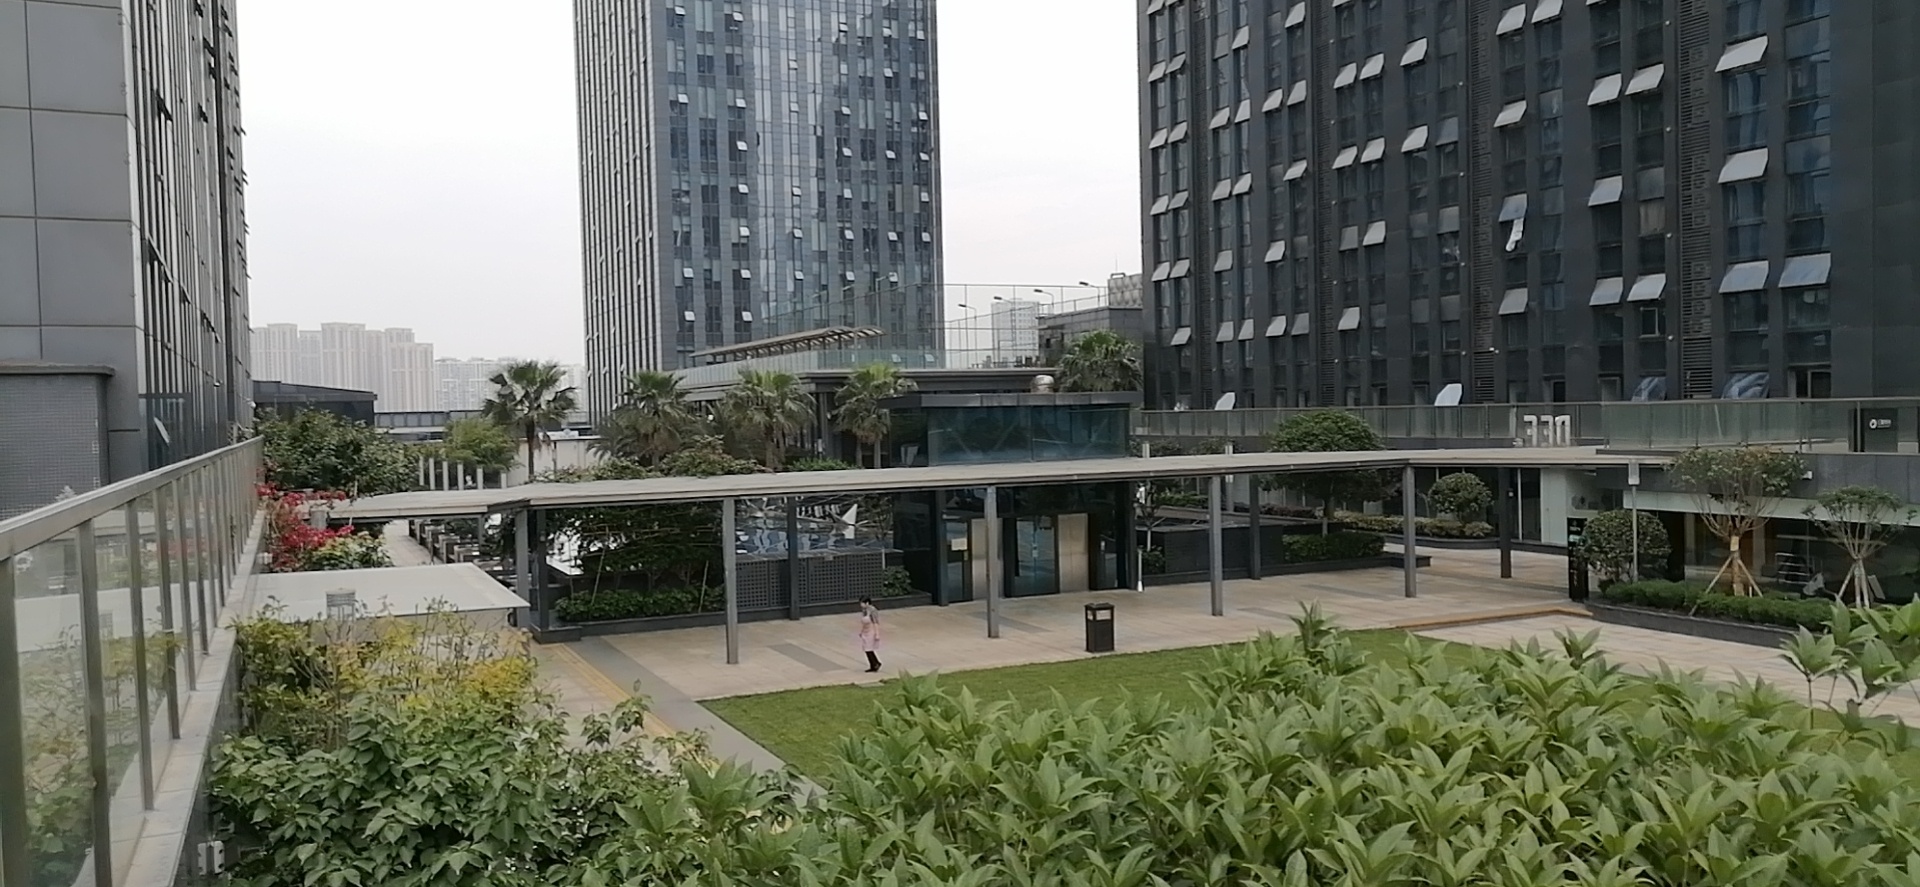 汇融广场#锦江  1720 平米 整层 可分割  楼空中花园办公区